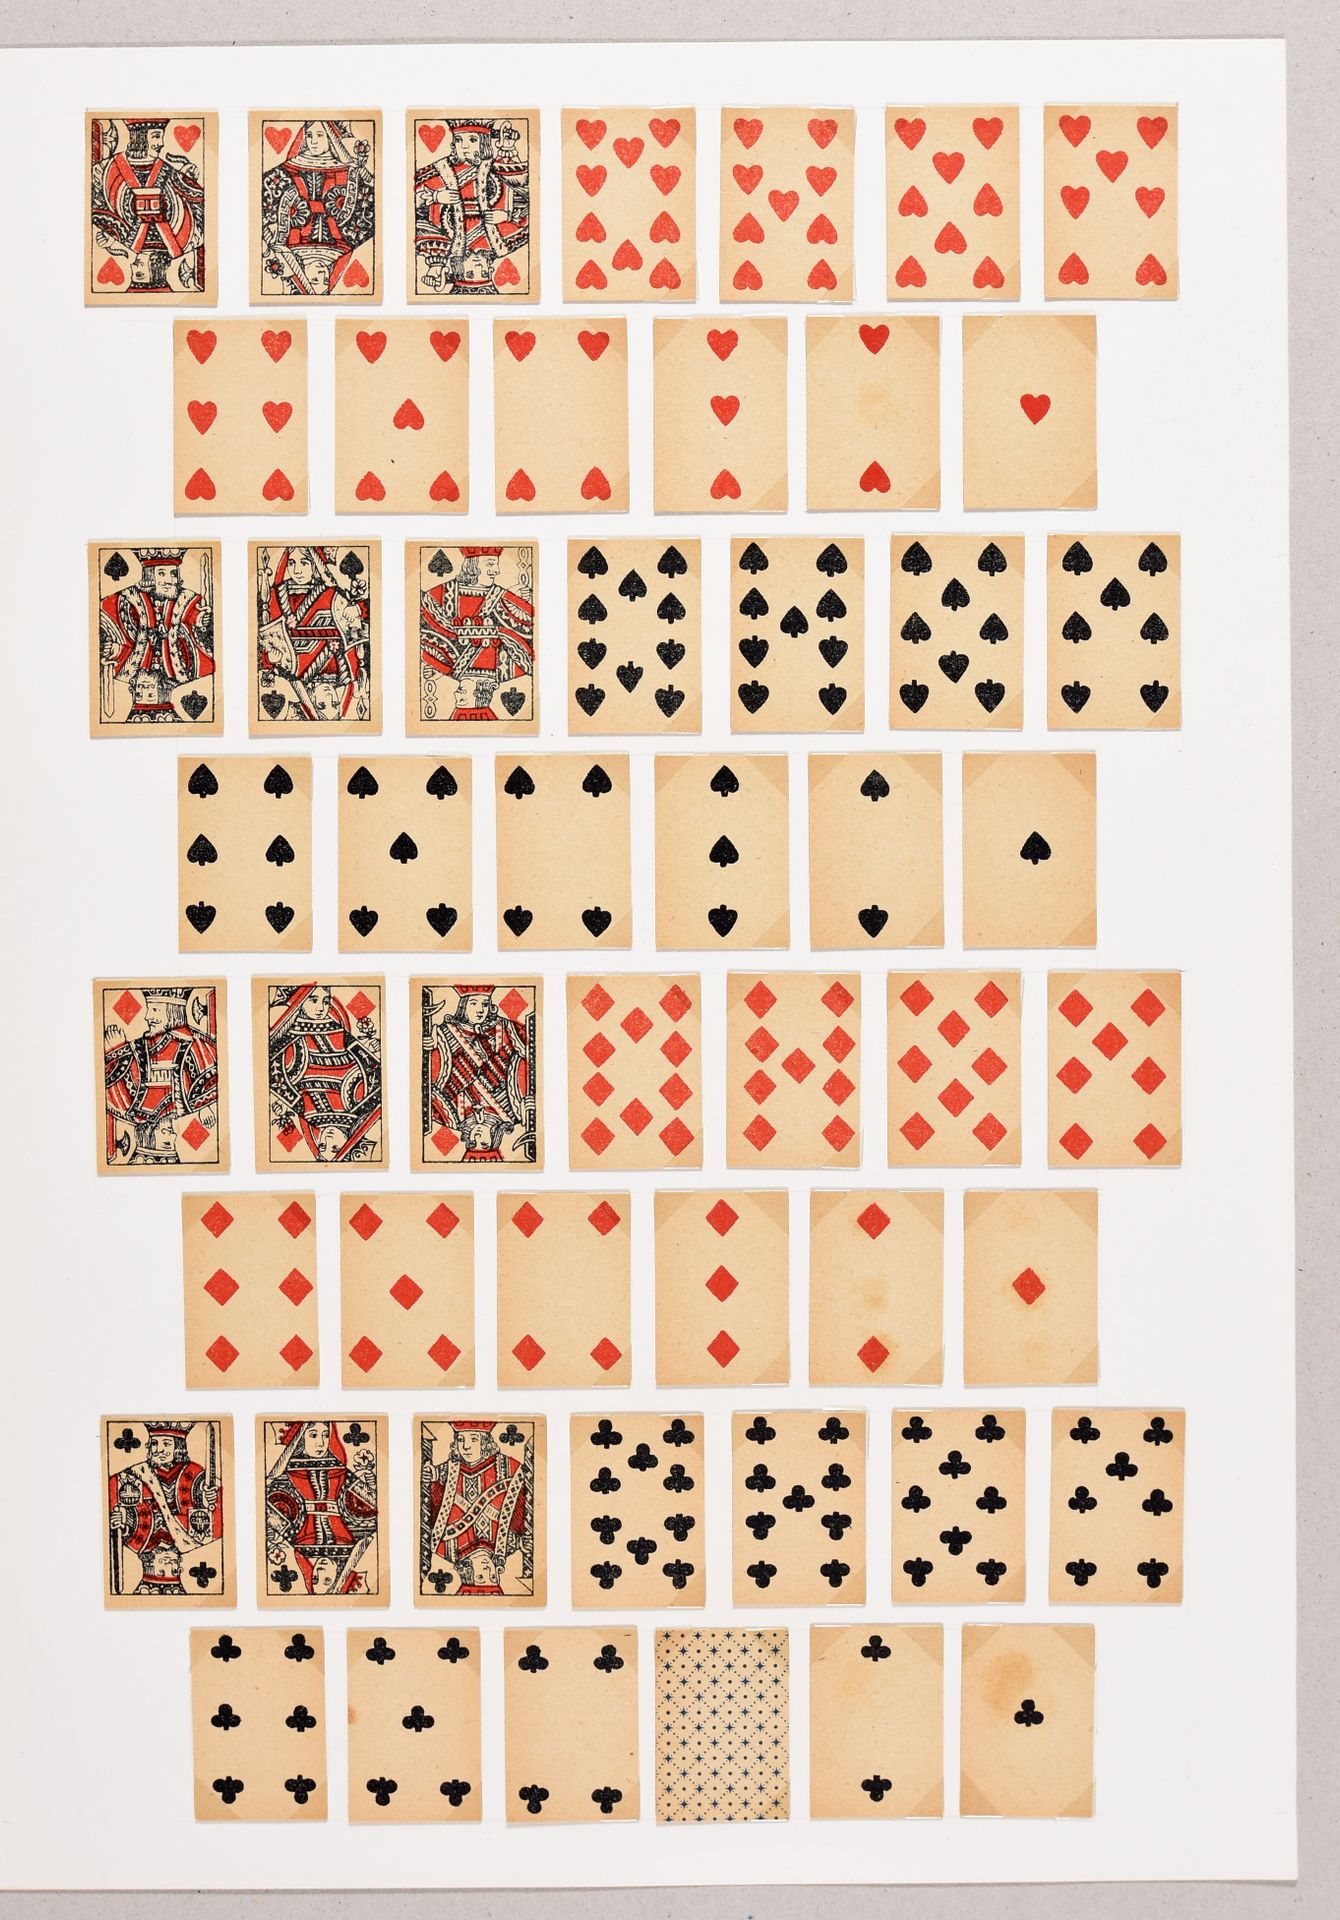 Null 25副扑克牌。[C. 1860-1950] 多数为木刻和钢印或铬石增强。安装在25个支撑片的照片角下。装在一个深绿色布面的盒子里（有些使用过的痕迹）。&hellip;